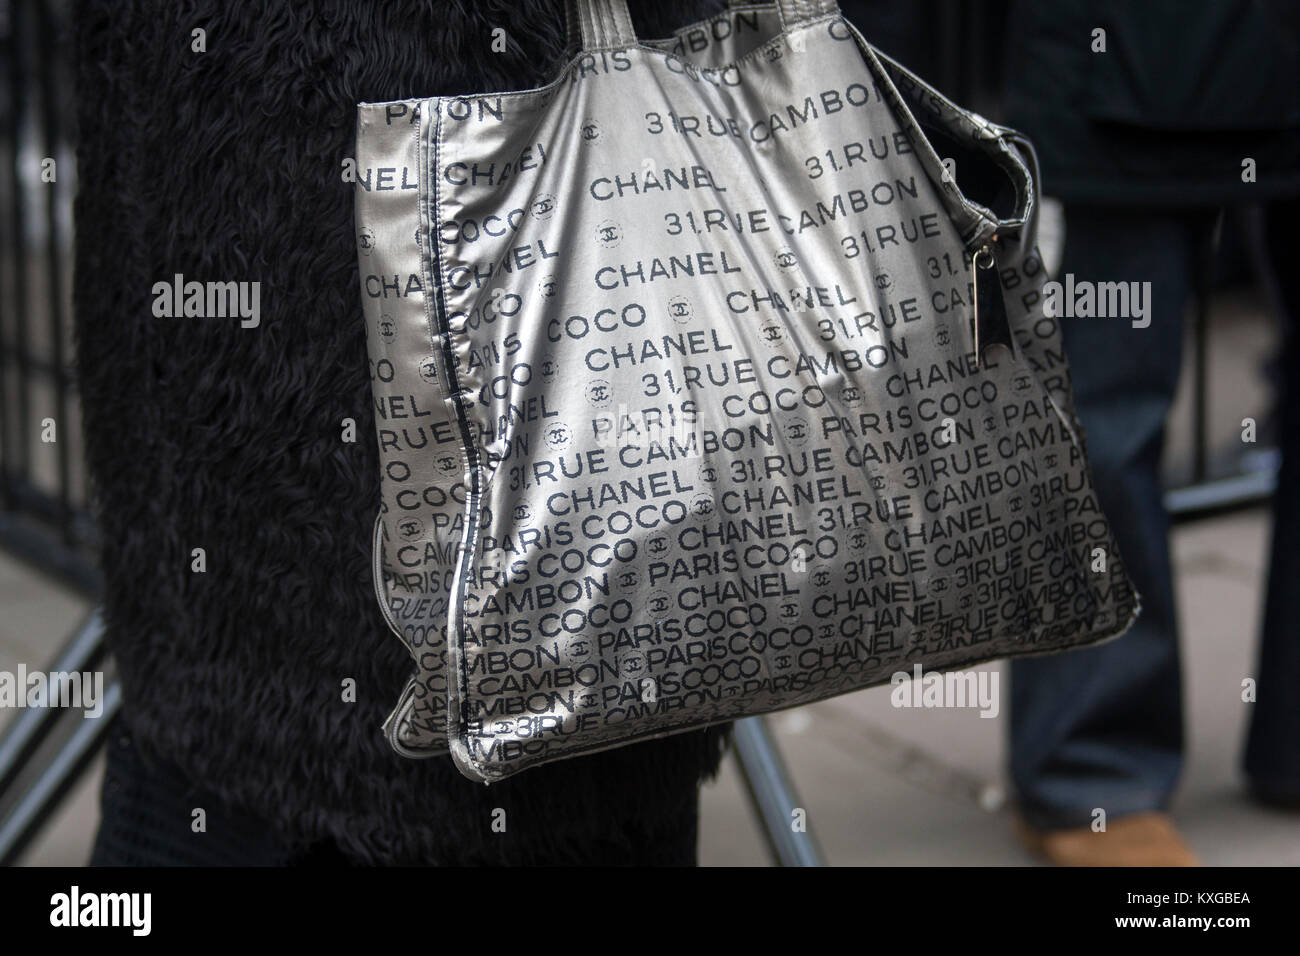 Chanel 31 Shopping Bag – Tulerie